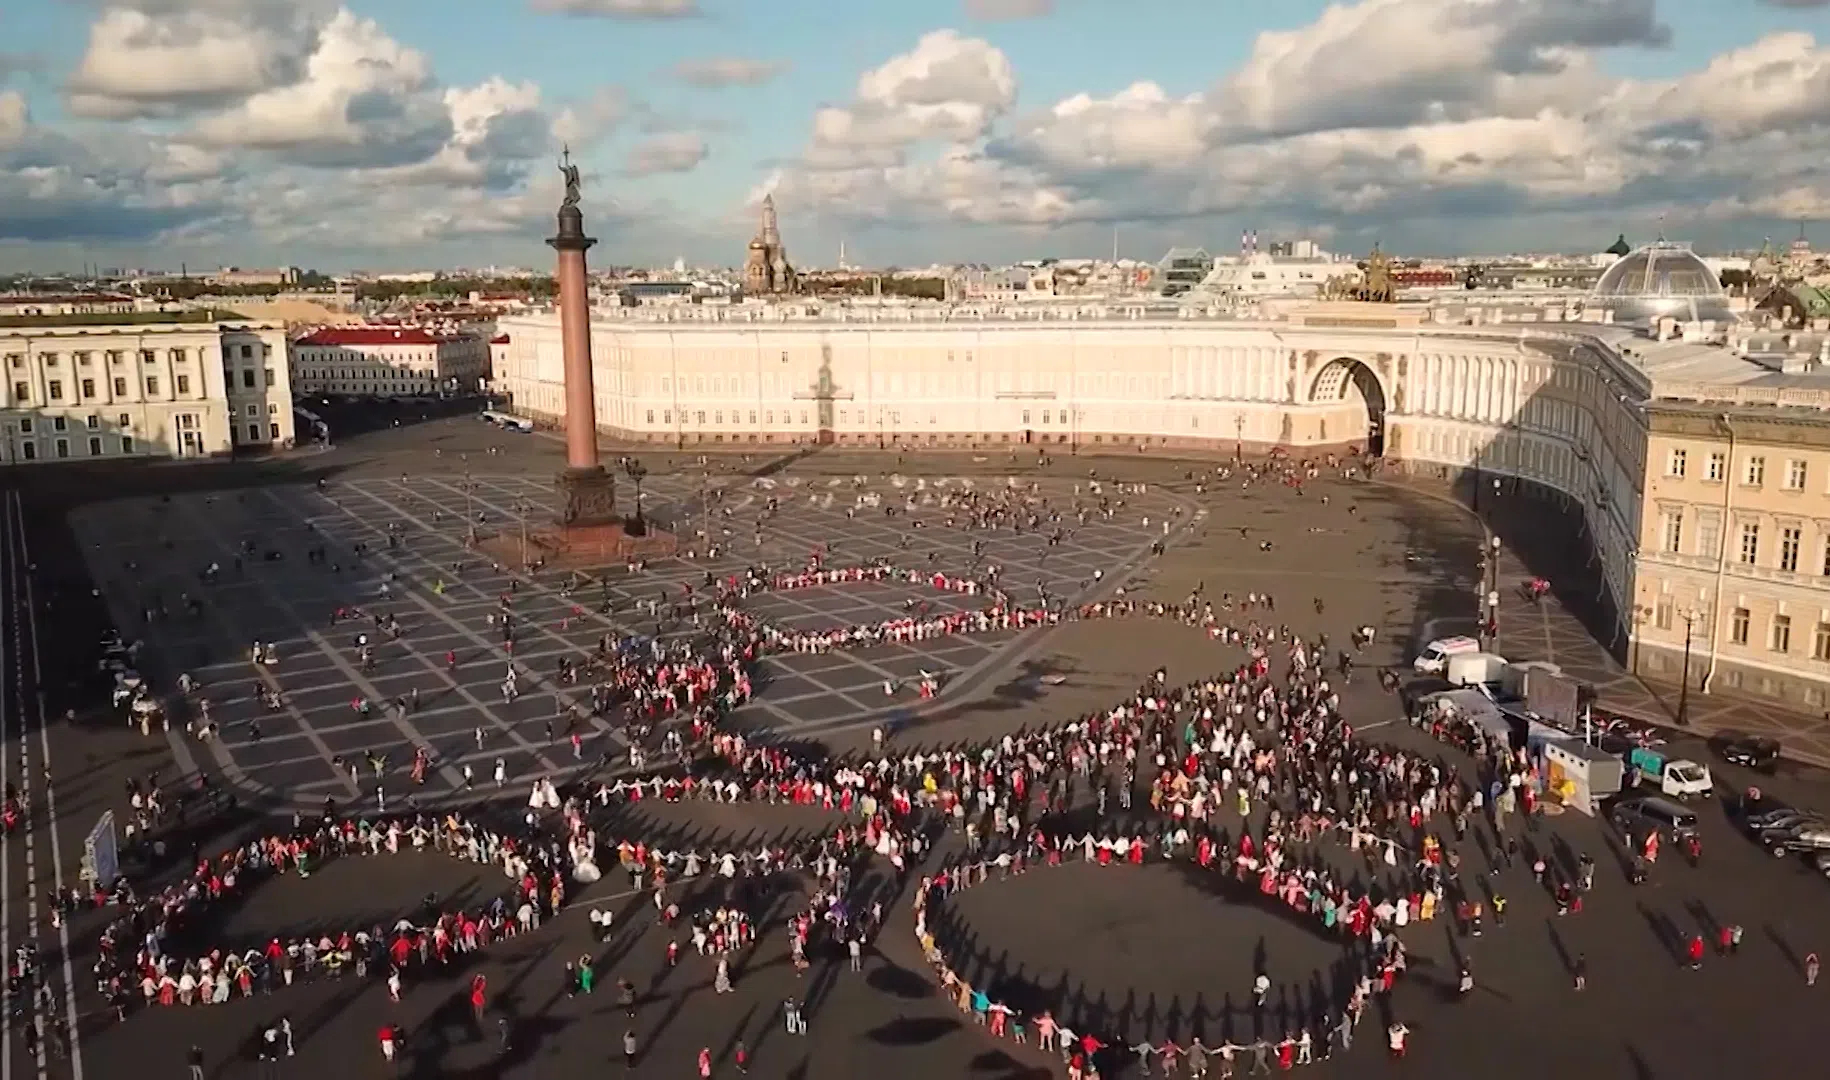 Дворцовая площадь в Санкт-Петербурге фестиваль